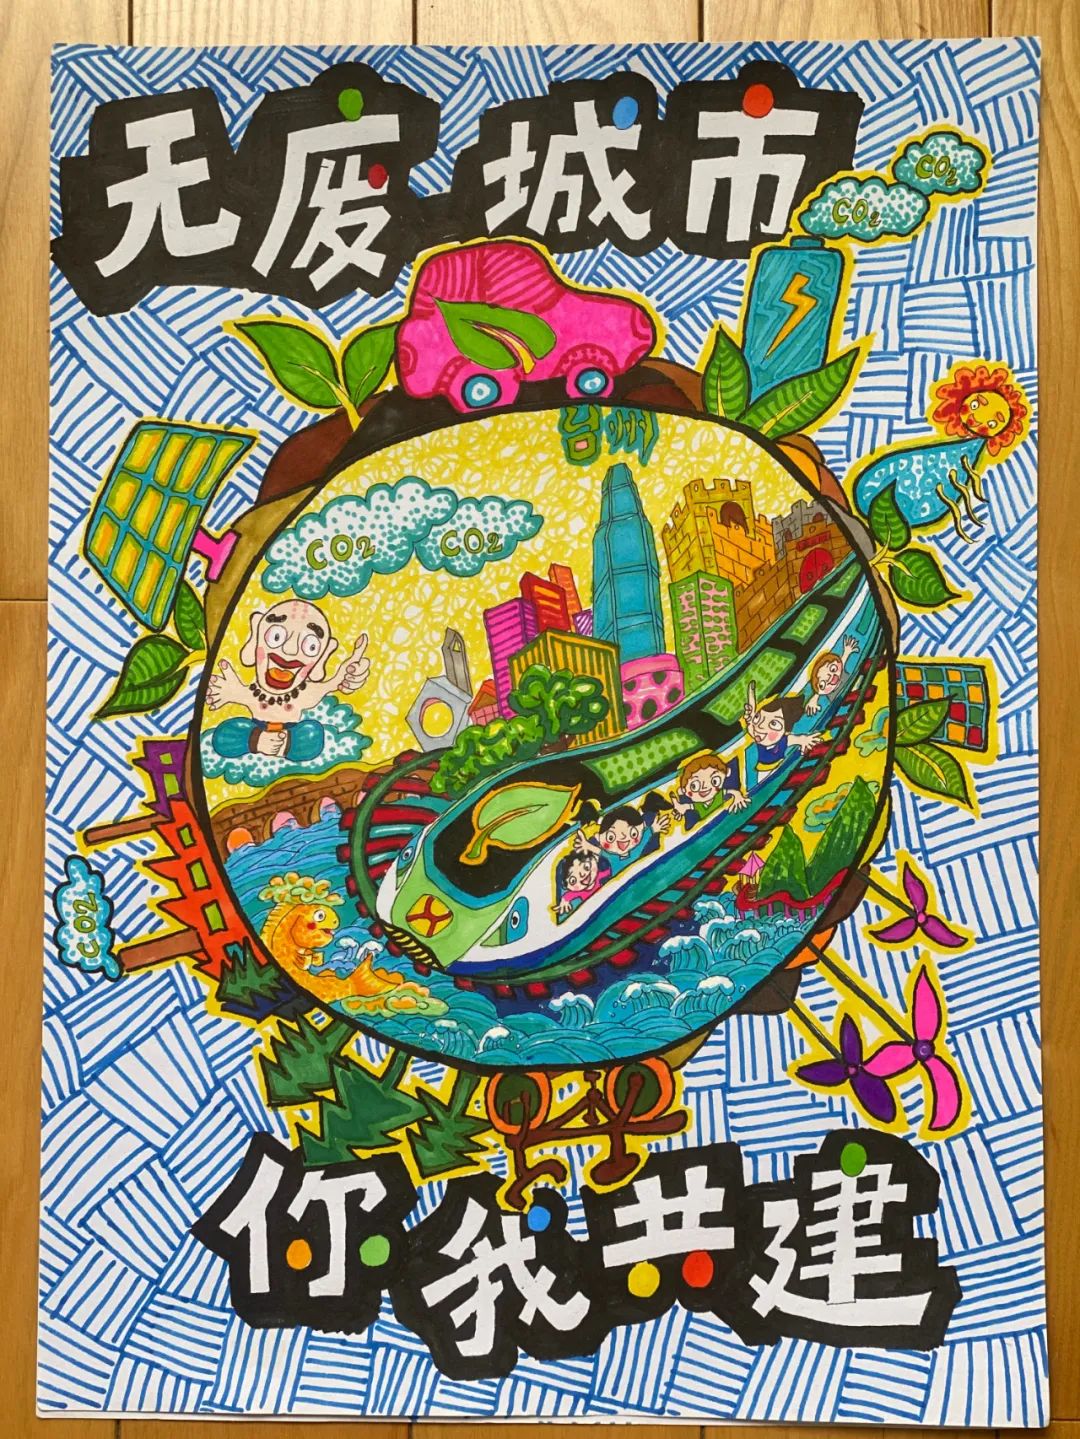 台州市无废城市建设宣传海报设计大赛获奖名单揭晓